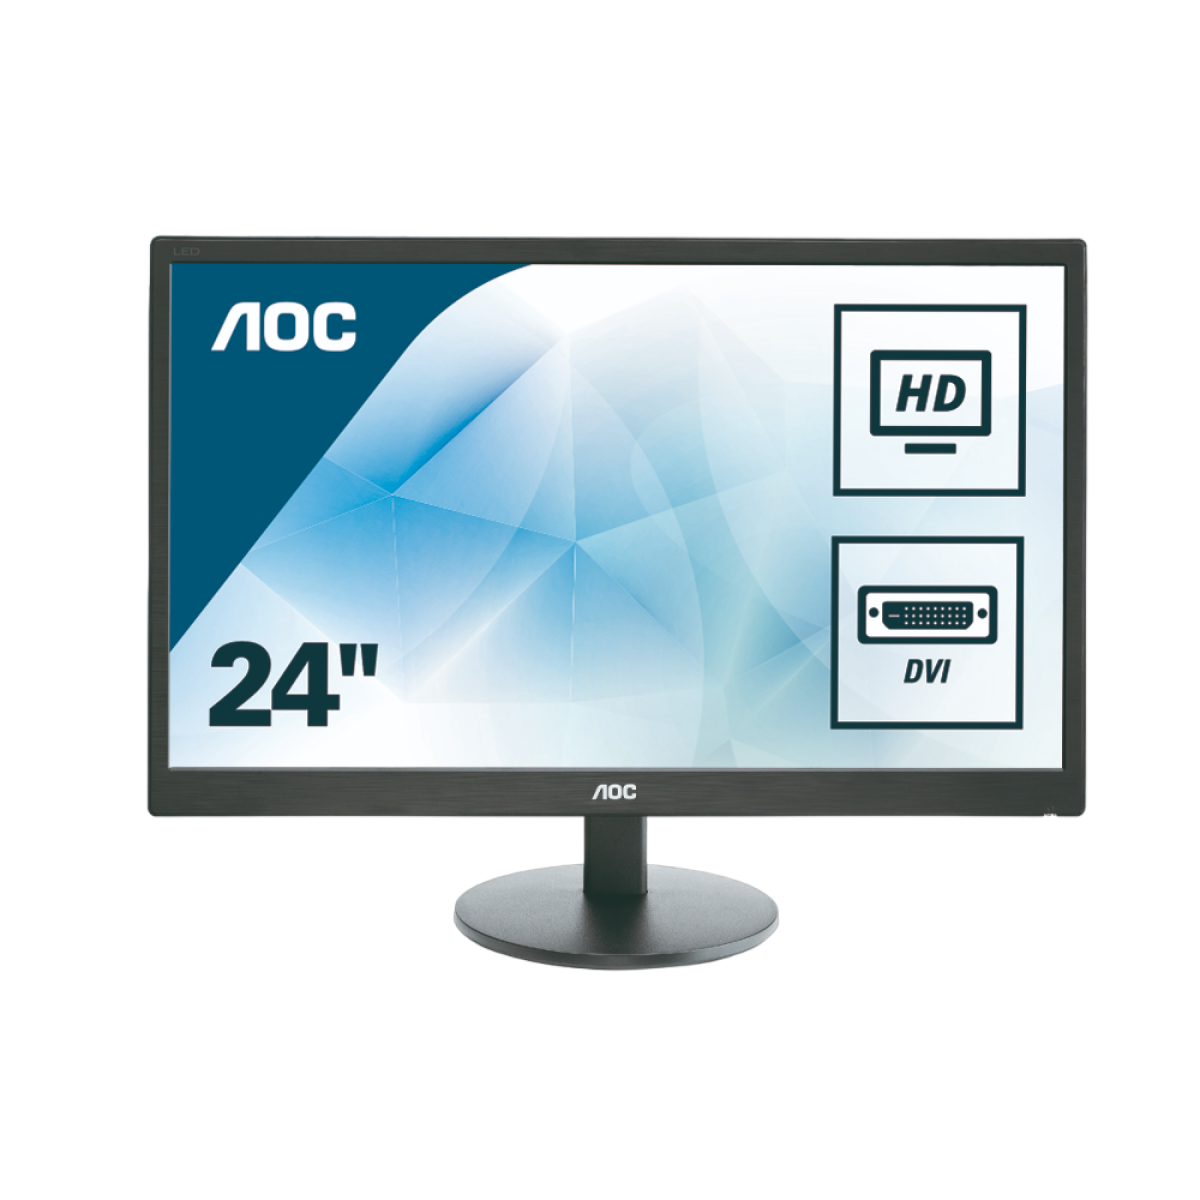 Монитор для дома и офиса AOC M2470SWD2 в официальном интернет магазине AGONBYAOC.ru (AOC Россия)